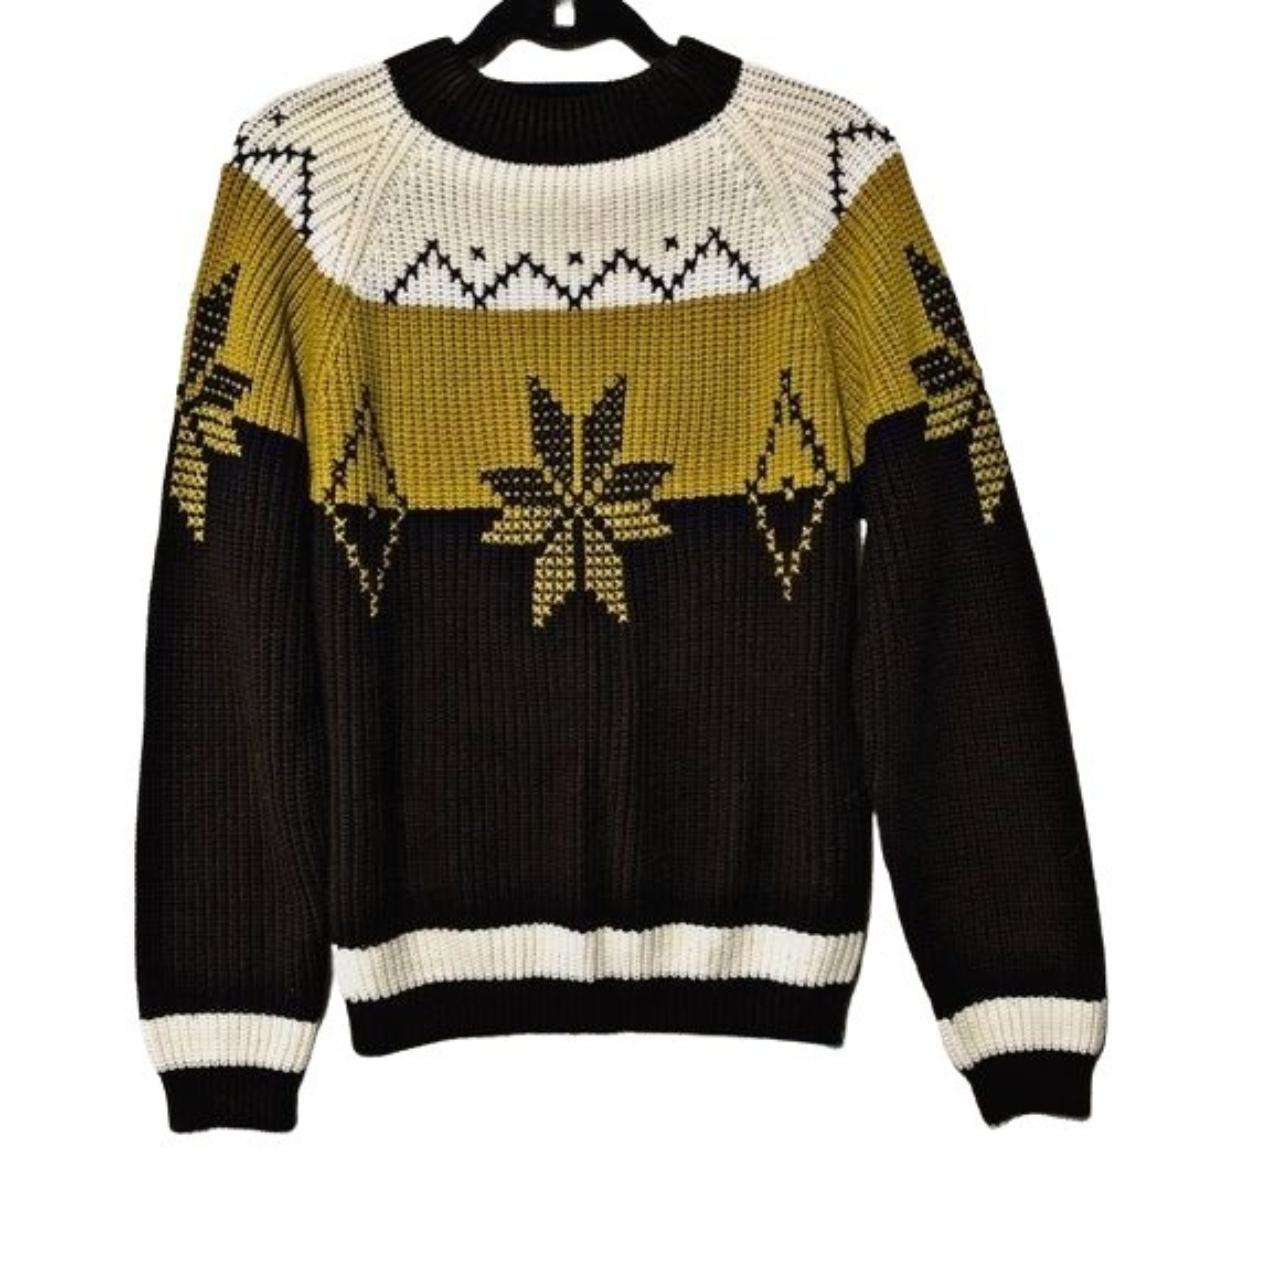 Vintage Chocolate Brown Snowflake Chunky Sweater... - Depop